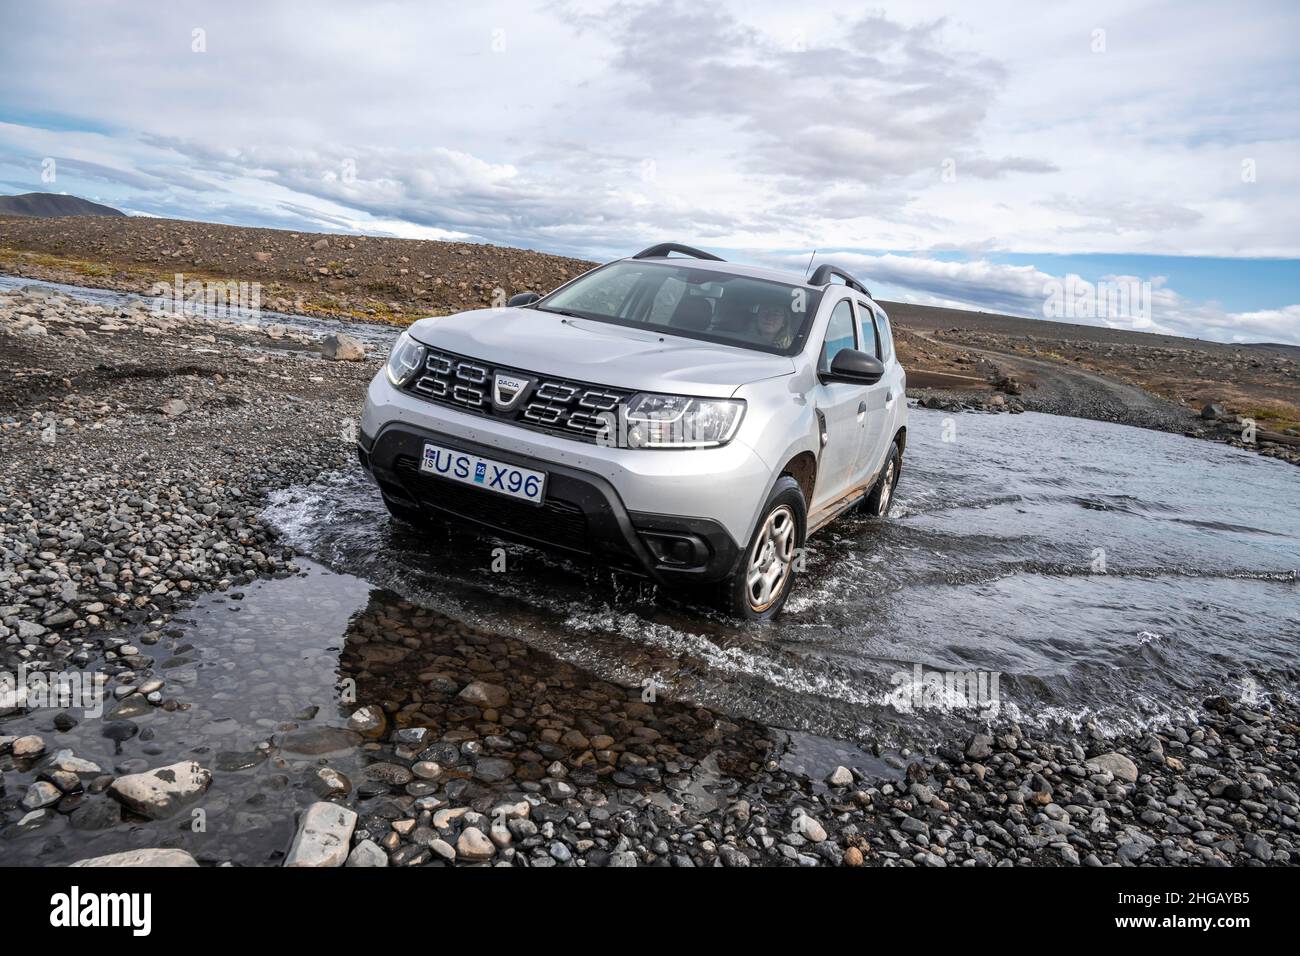 Dacia Duster 4x4 voiture traversant une rivière, ford, route de gravier, paysage stérile, Islandais Highlands,Islande Banque D'Images